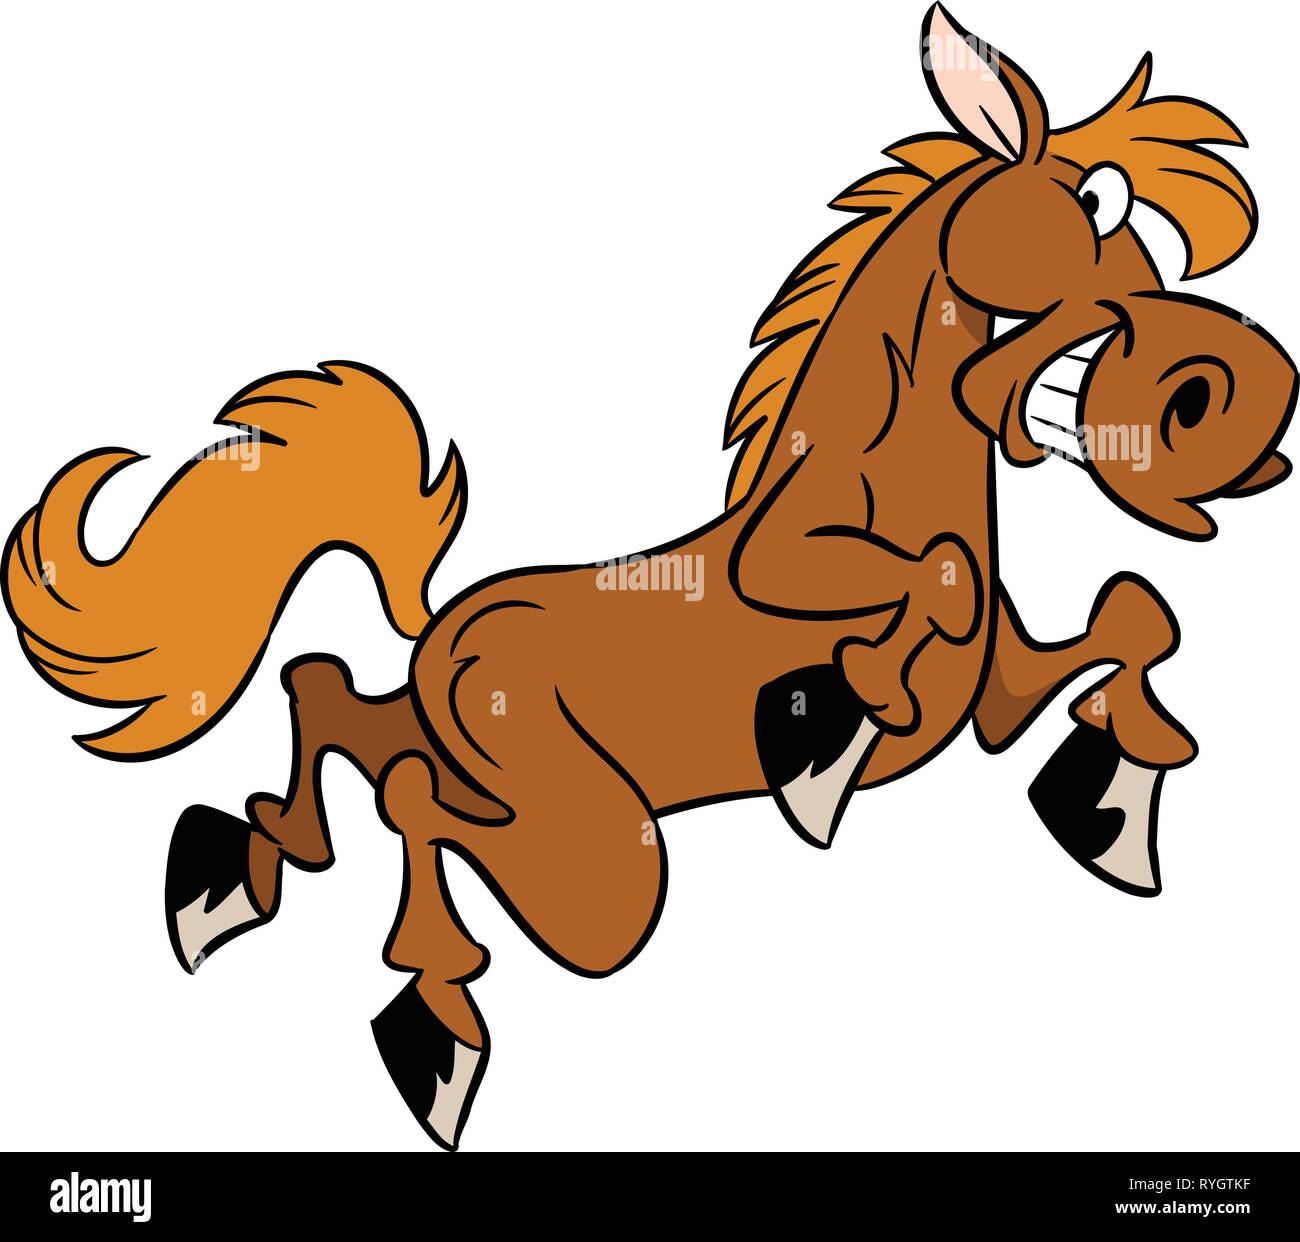 L'illustration montre un peu funny cartoon horse isolé sur un fond blanc, sur des calques distincts. Illustration de Vecteur